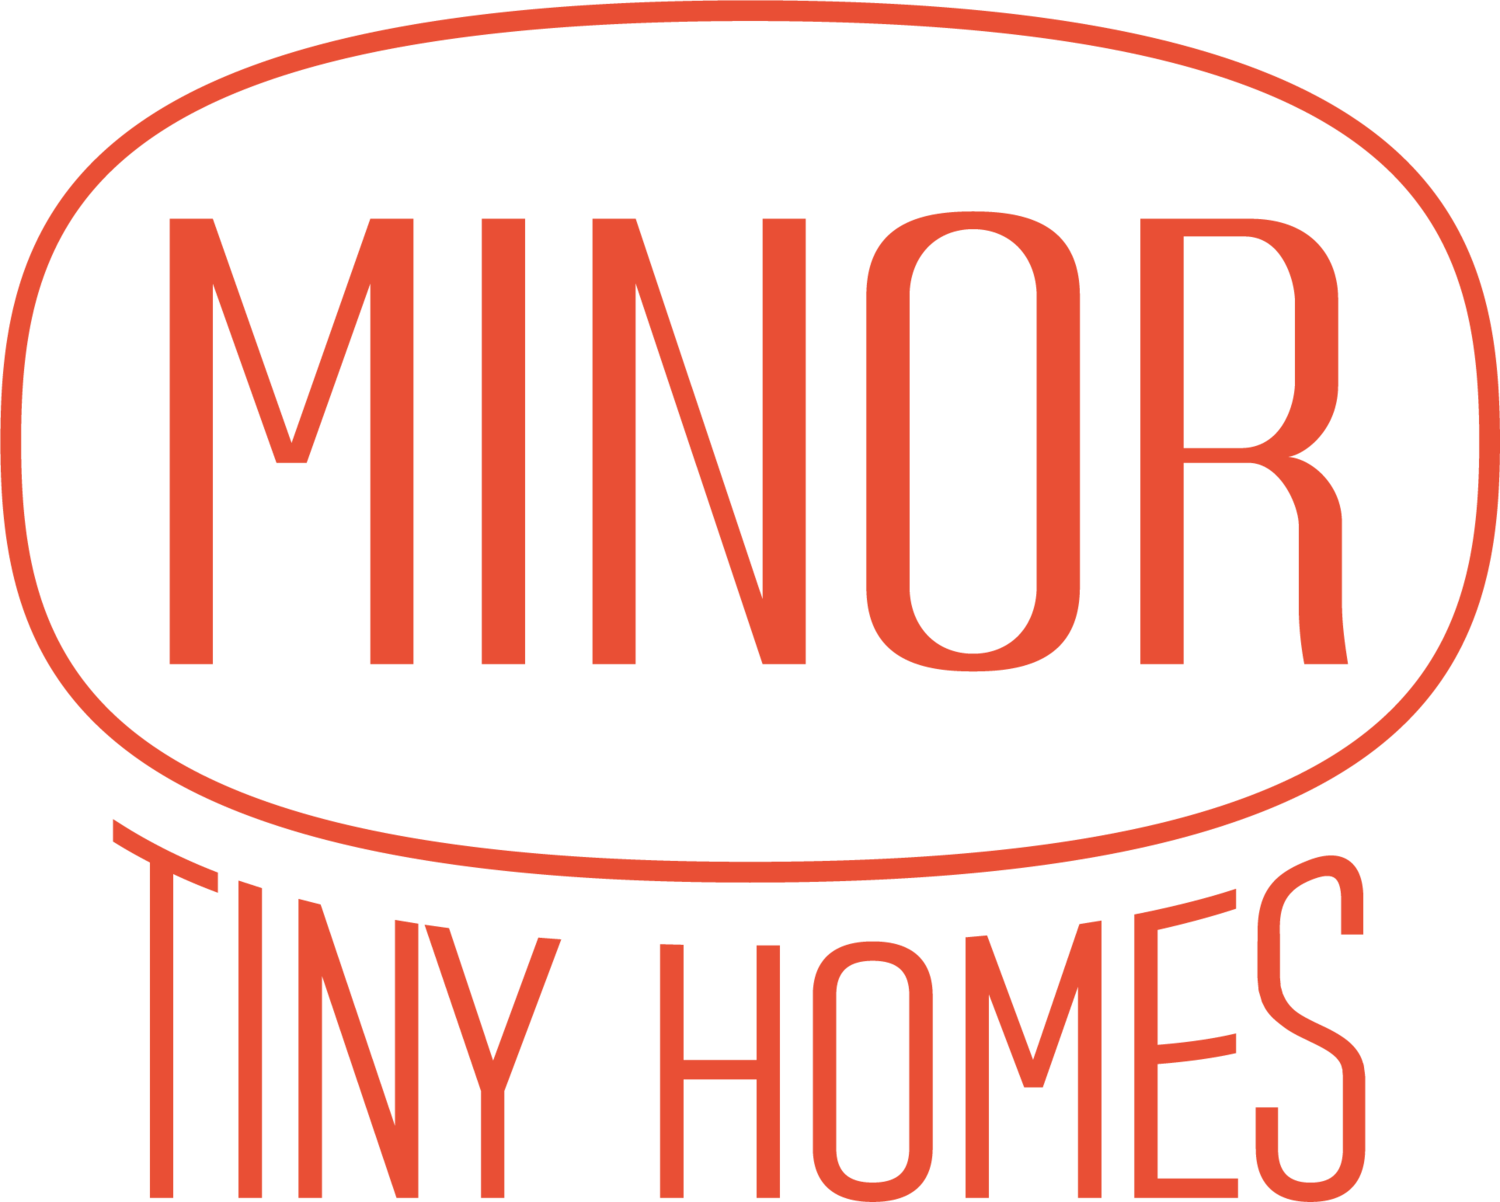 Minor Homes